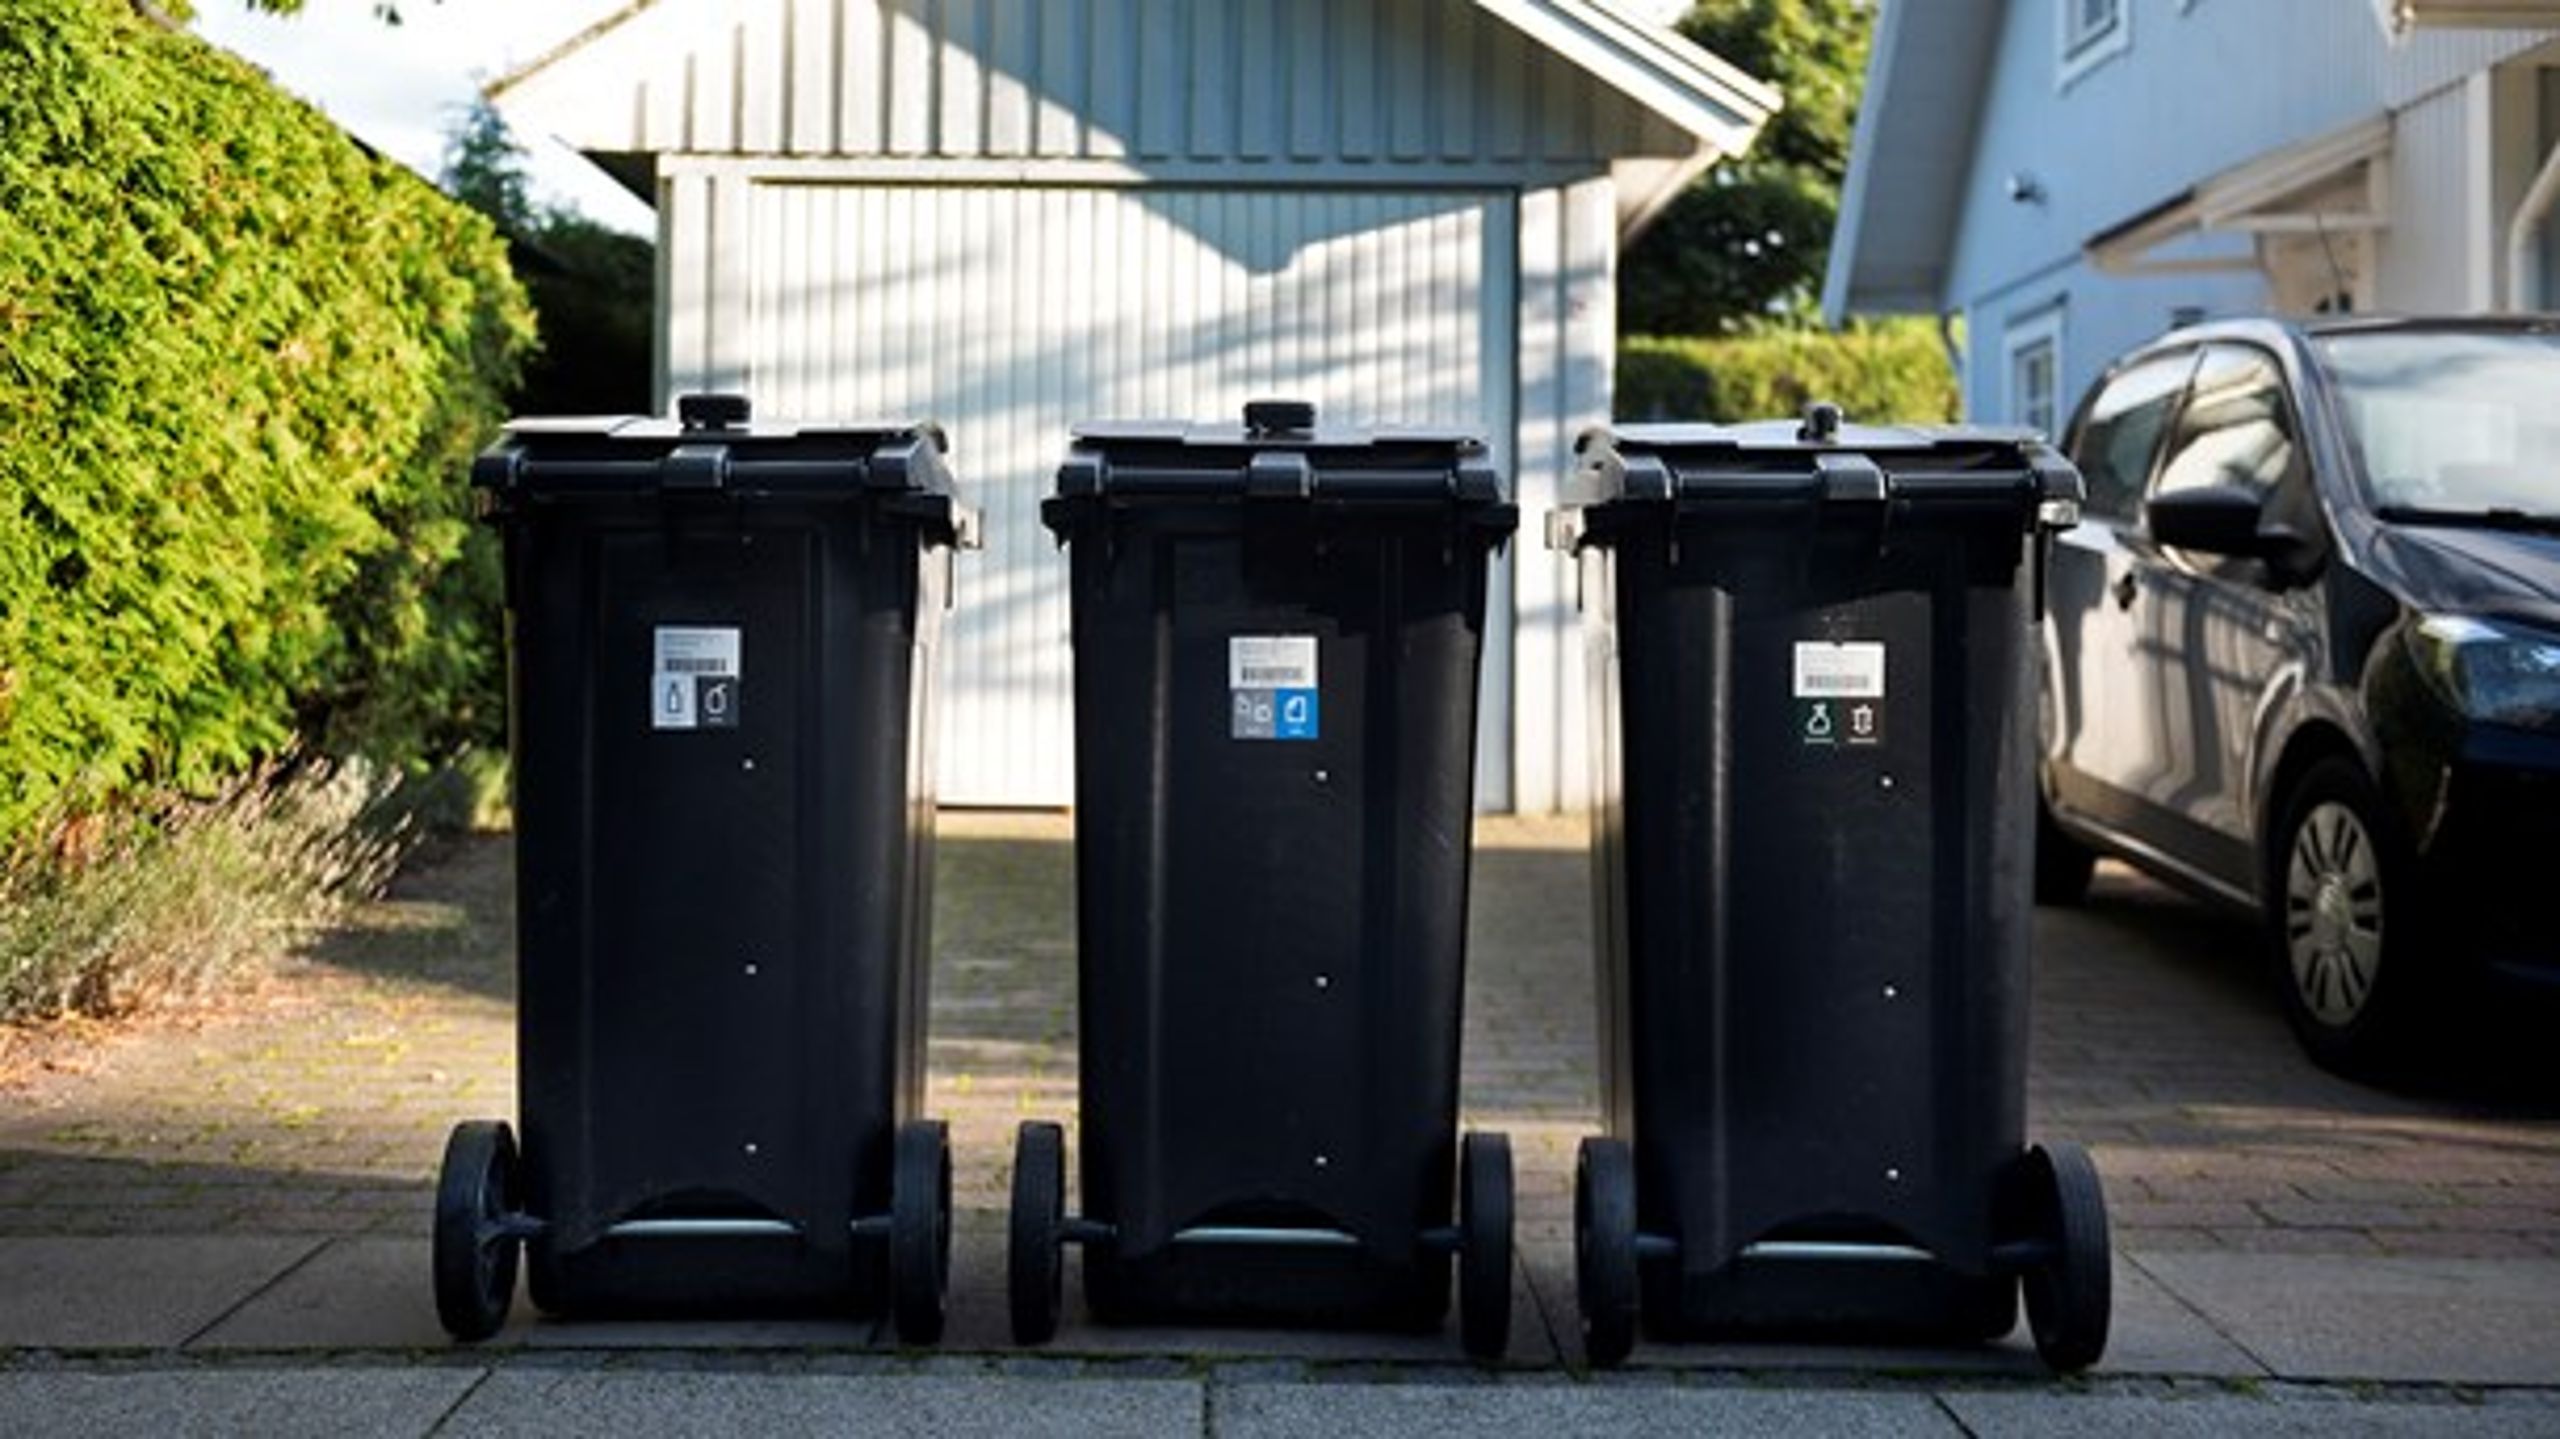 Emballage i genanvendte affaldsmaterialer er et vækstområde, som Danmark skal udnytte, mener Dansk Erhverv.